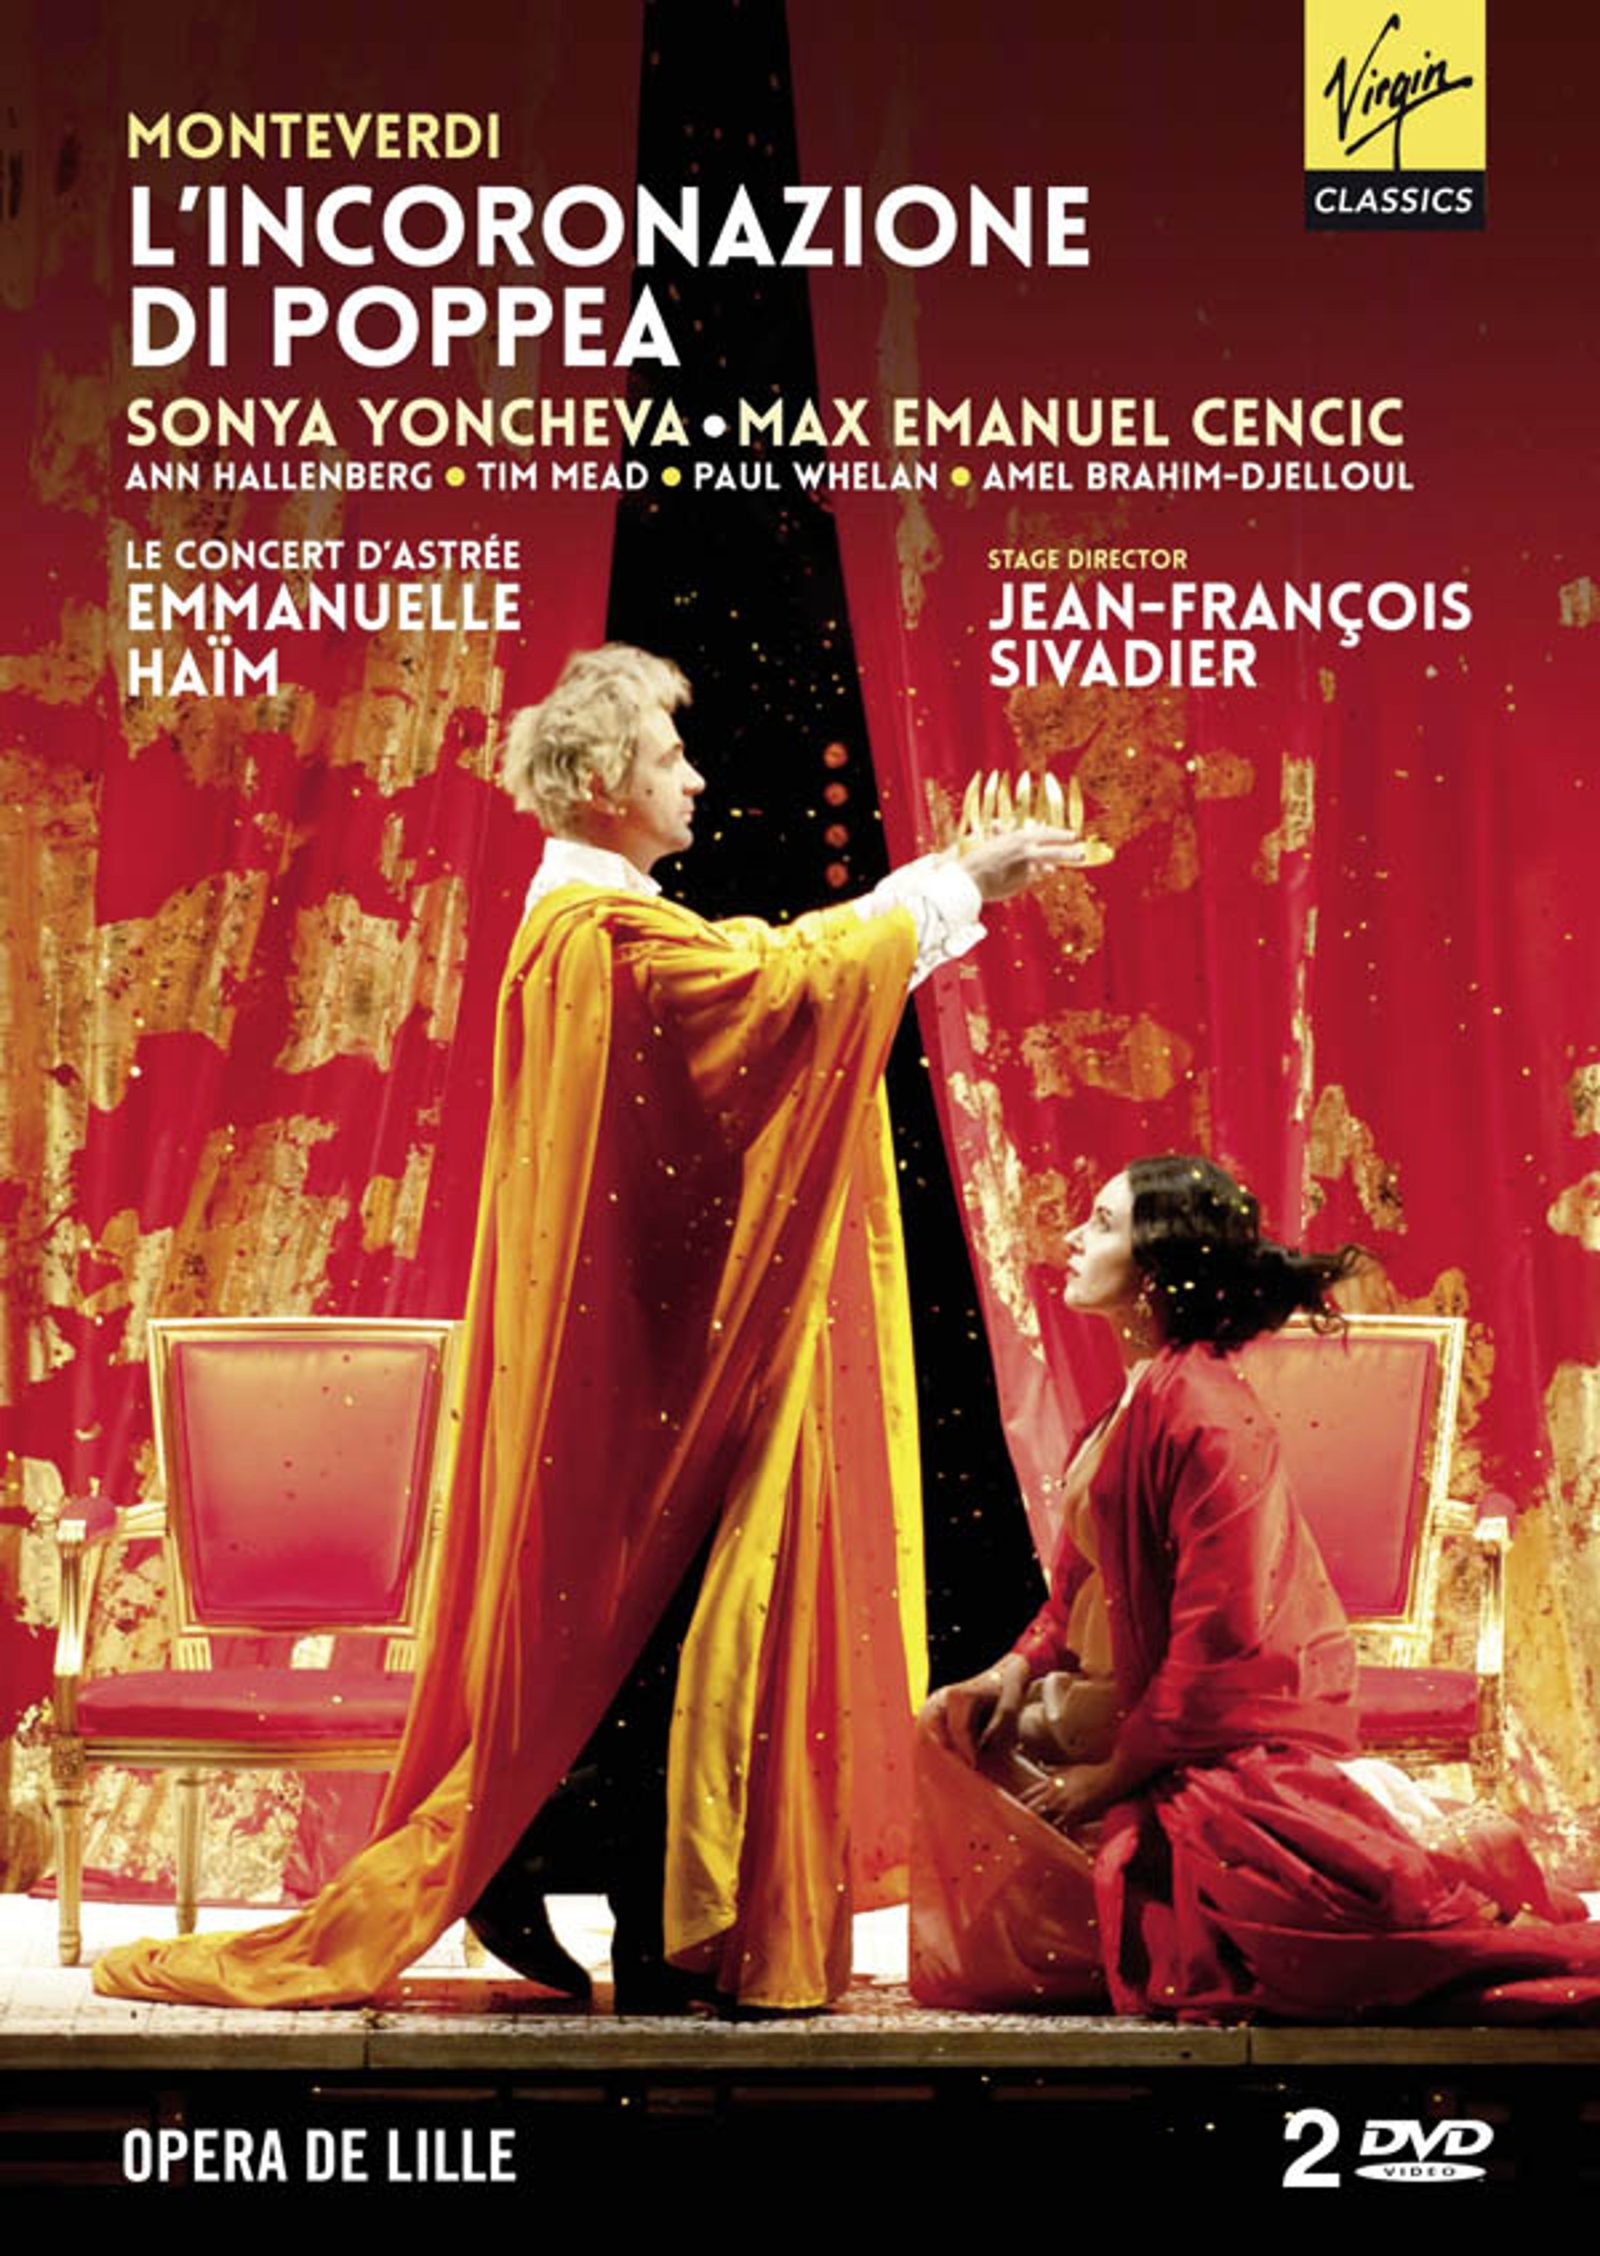 Max Emanuel Cencic DVD - L'incoronazione di Poppea (2013)